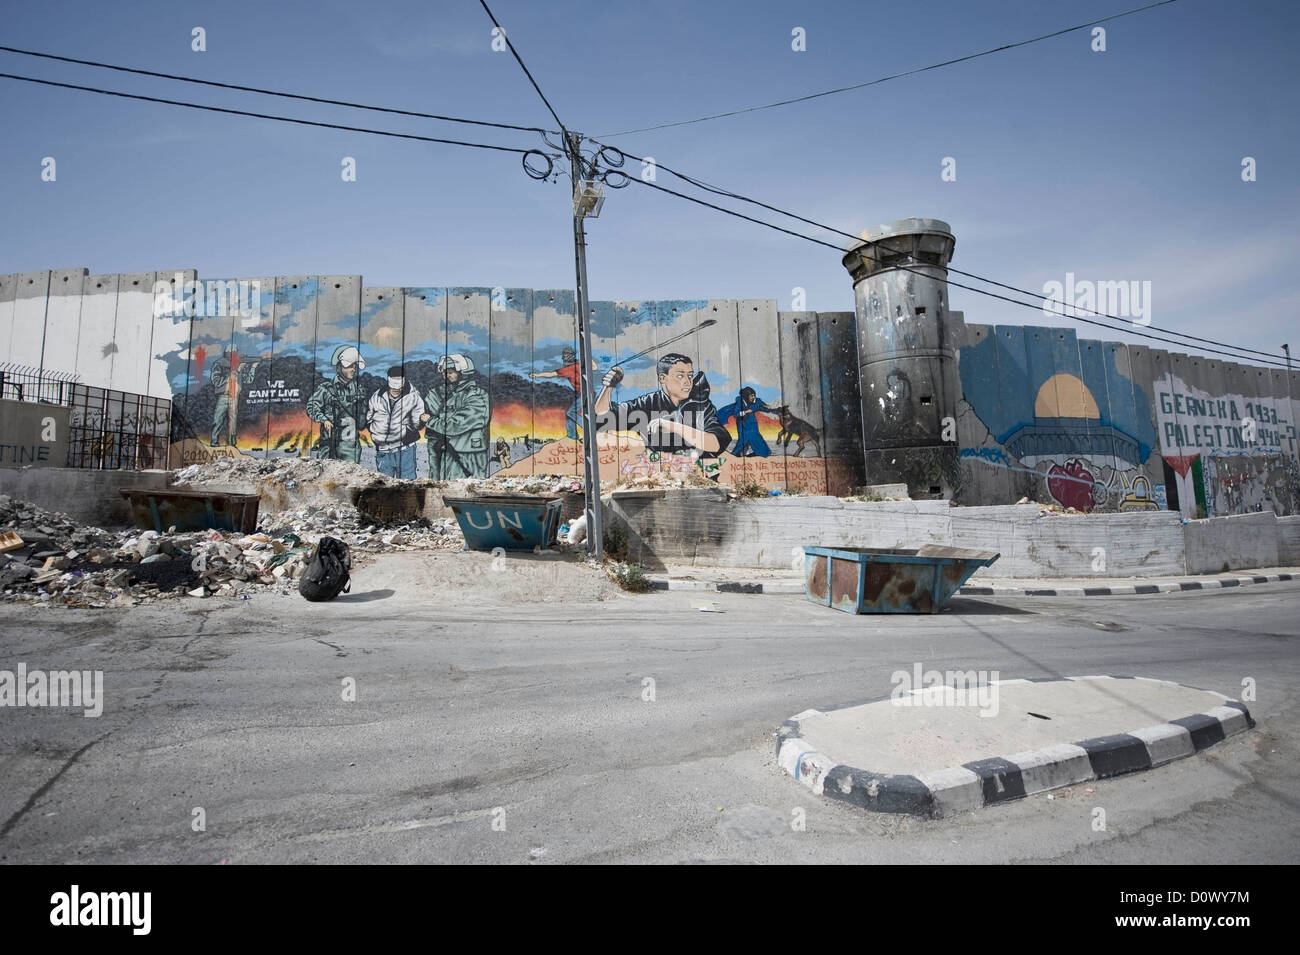 La parete di separazione in Cisgiordania dividendo l'Ebreo e popolazione palestinese in Cisgiordania, Palestina. Foto Stock